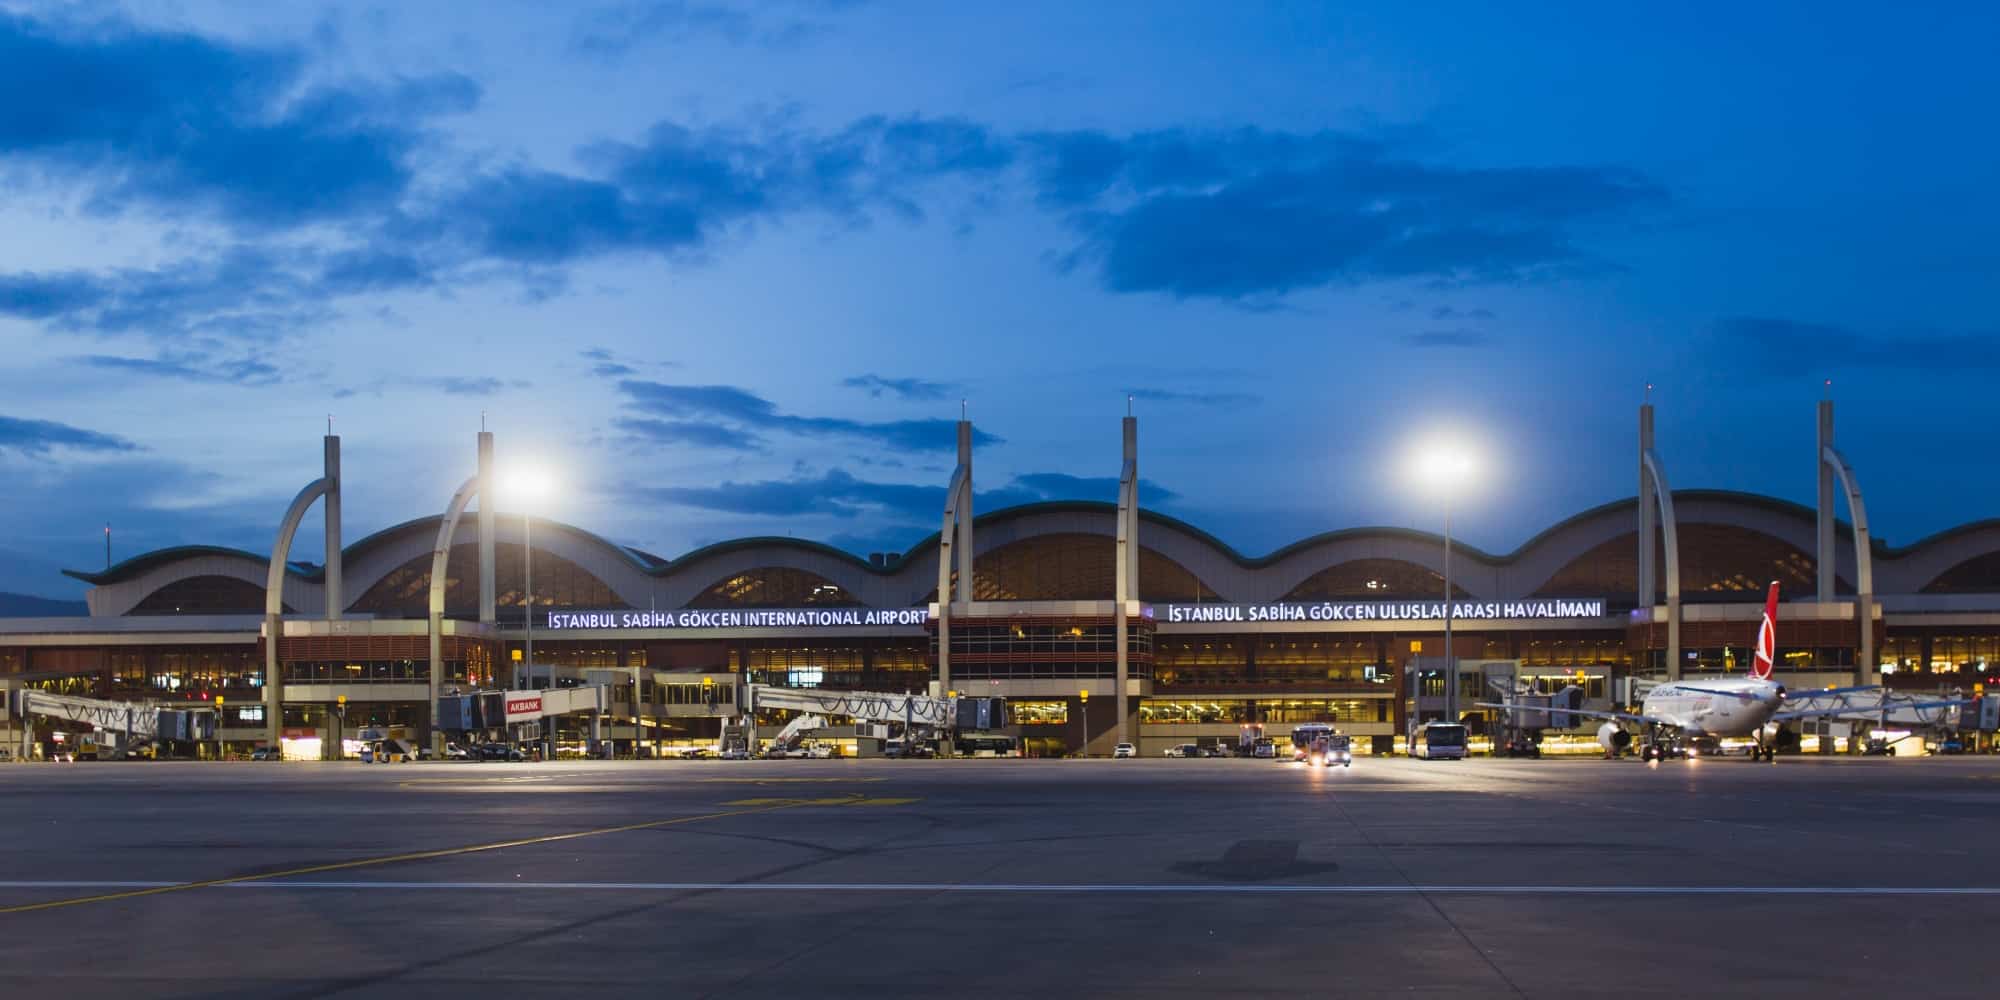 Аэропорт стамбула сабиха гекчен: как добраться добраться султанахмед, таксим, на вокзал, на адалары, в новый аэропортolgatravel.com